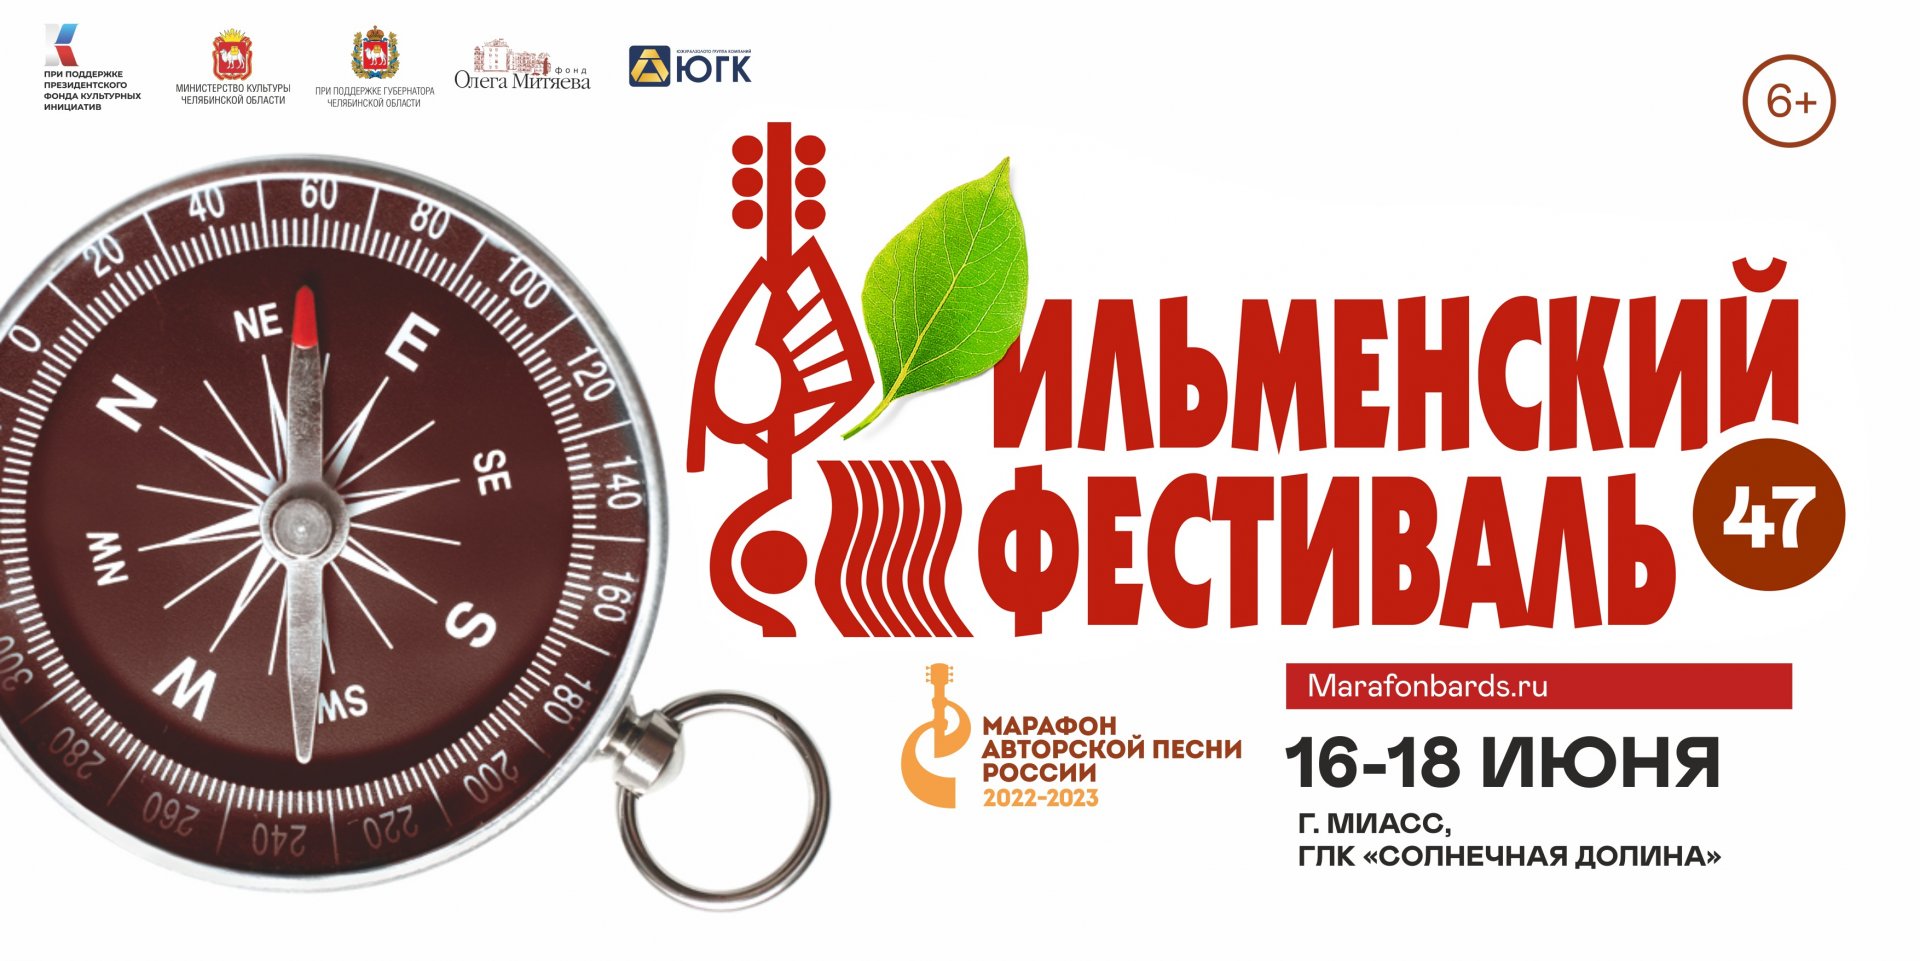 47 Всероссийский Ильменский фестиваль (16-18 июня 2023, Южный Урал, ГЛК "Солнечная долина")